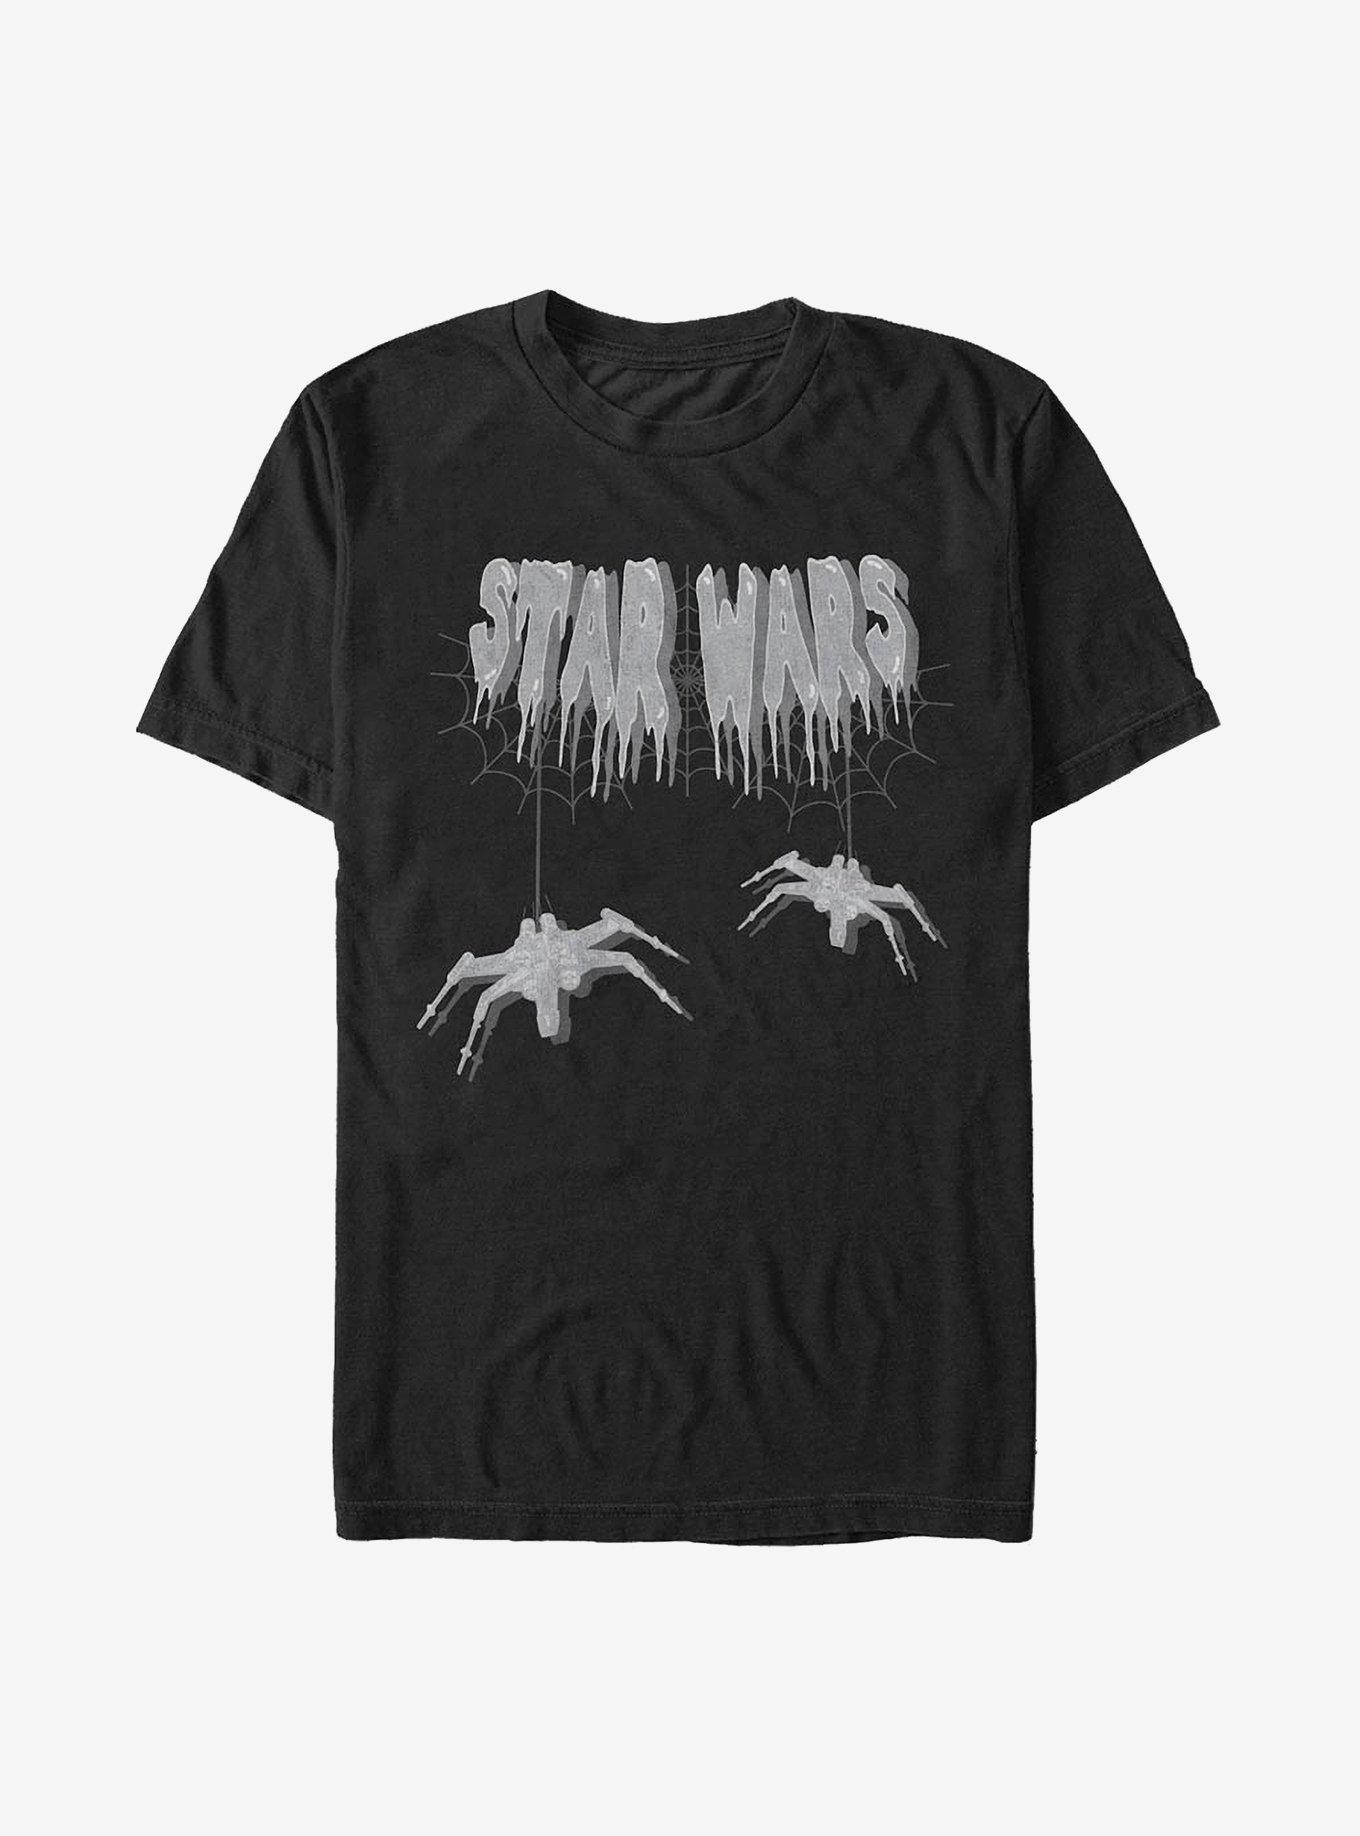 Star Wars Spooky Star Wars T-Shirt, BLACK, hi-res